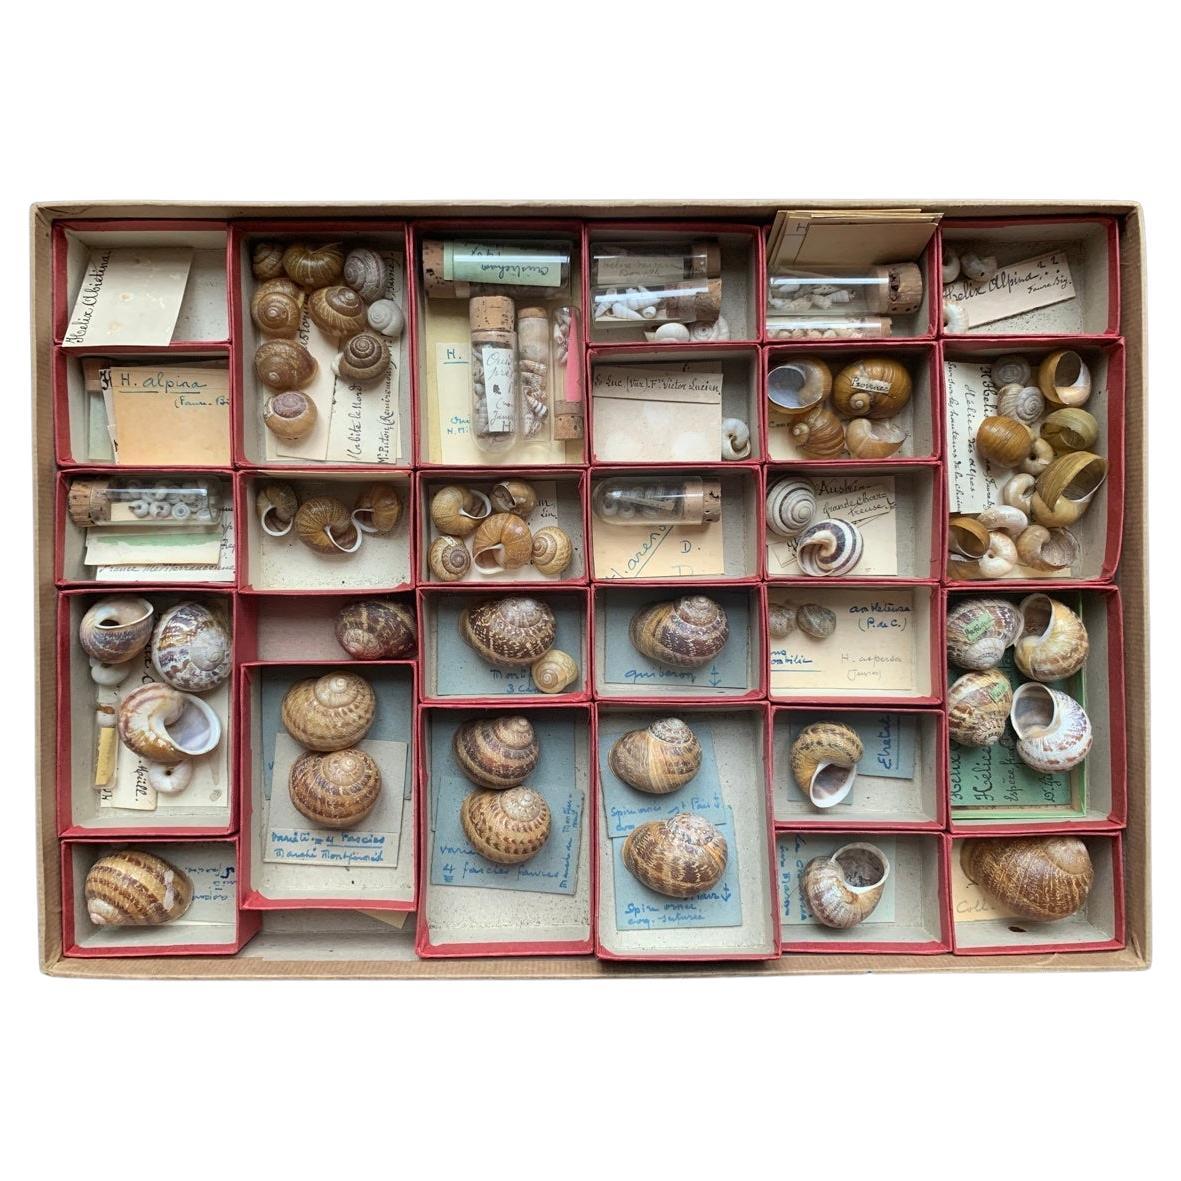 Sammlung von Muscheln aus der Naturalismus-Kollektion von Schrank, um 1900